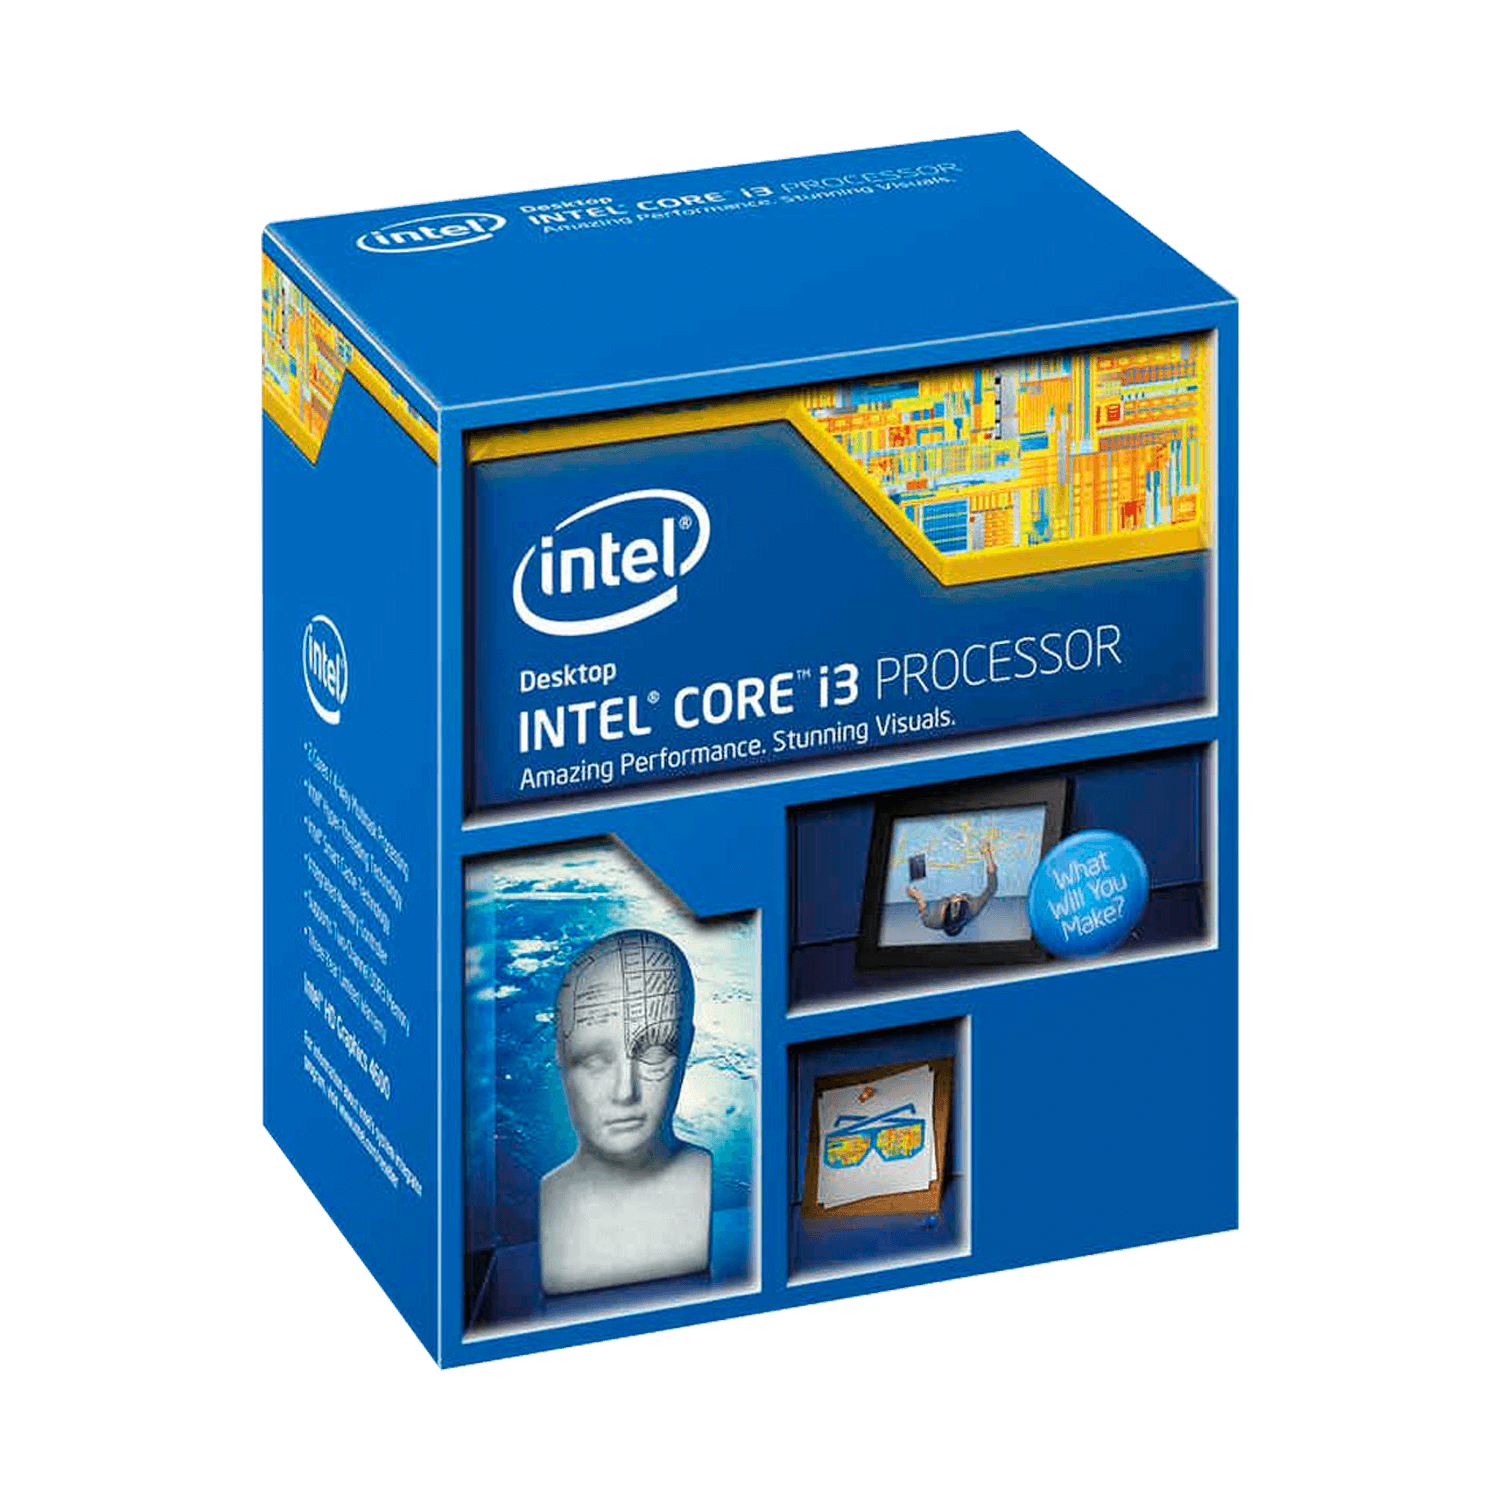 Processador Intel Core i3-4330 Pull OEM Socket 1150 2 Core 4 Threands Cache 3MB 
